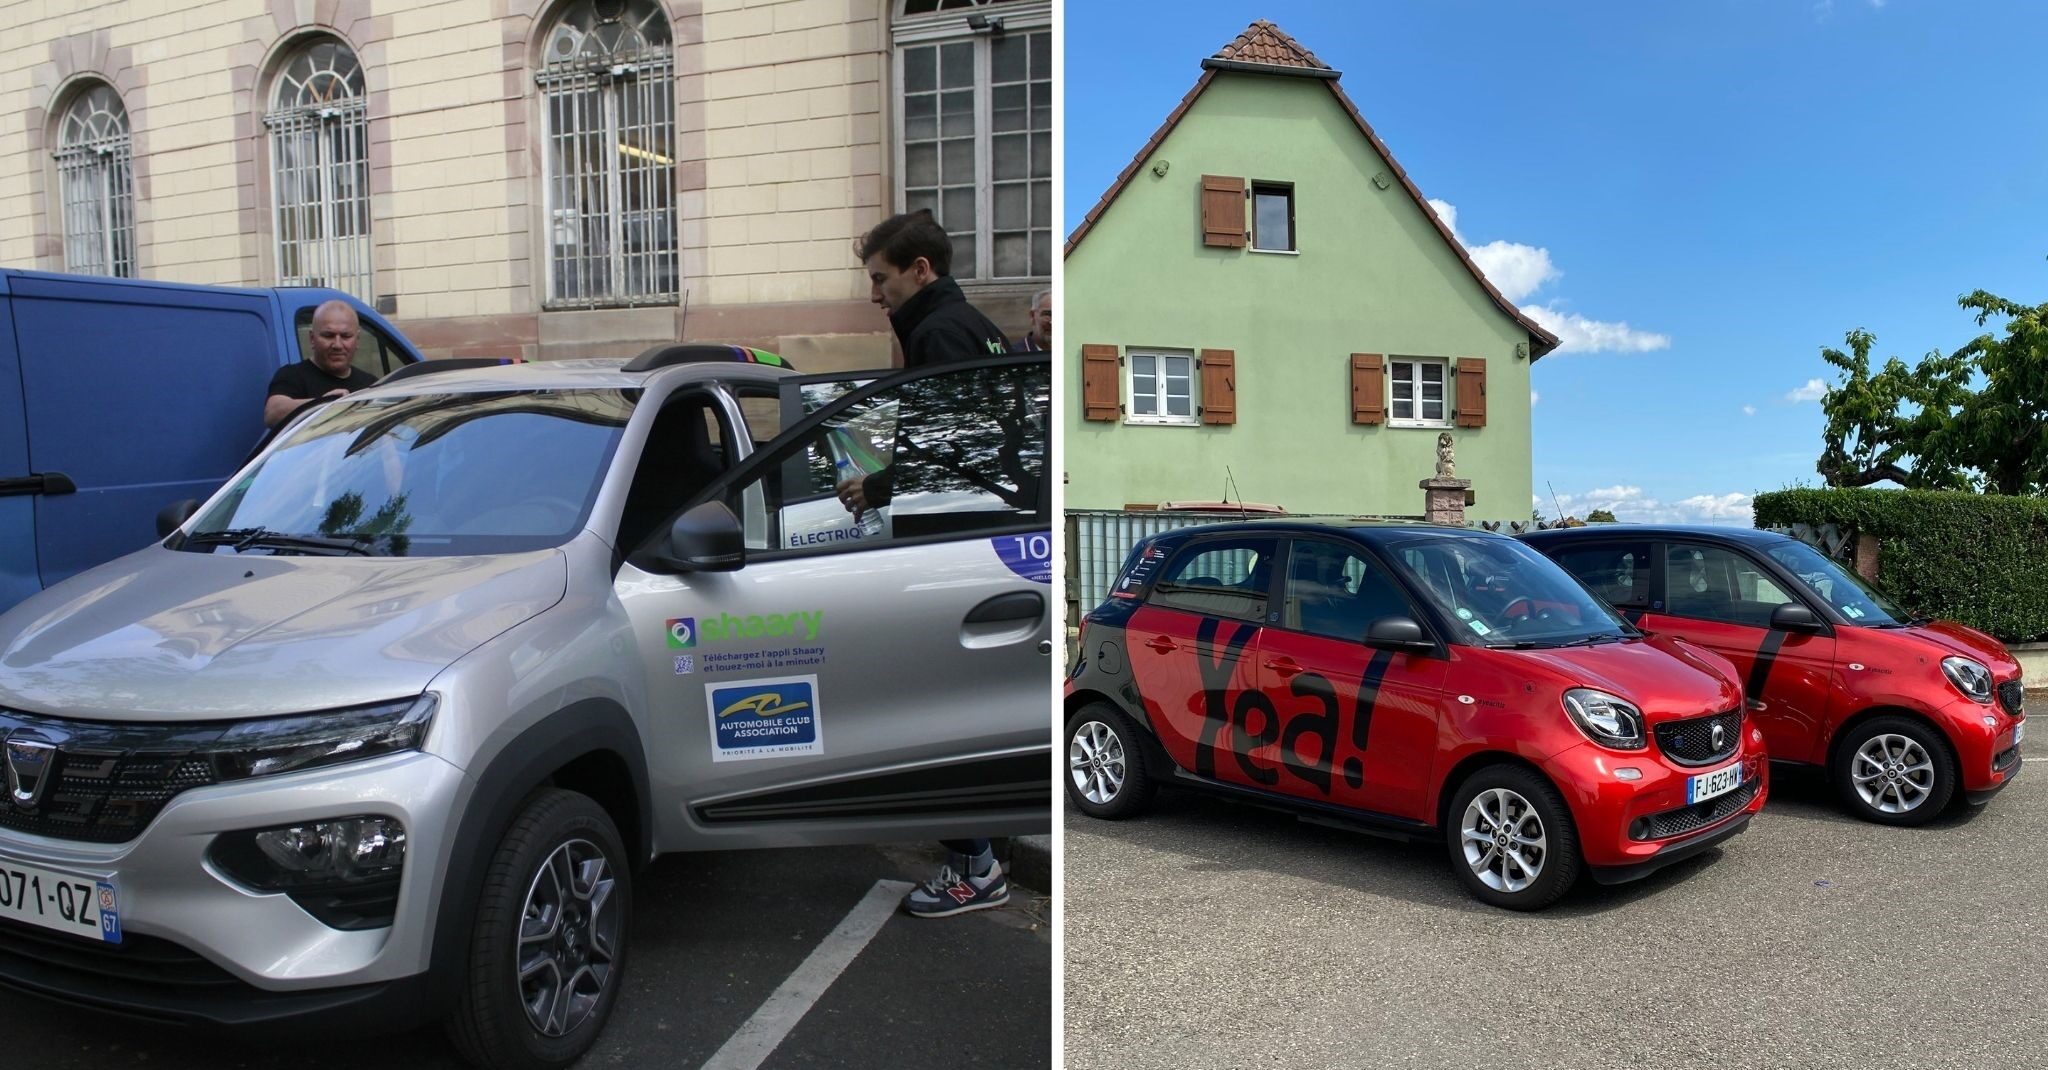 Plus de voitures en autopartage à Strasbourg avec les projets de Citiz et l’arrivée d’un concurrent